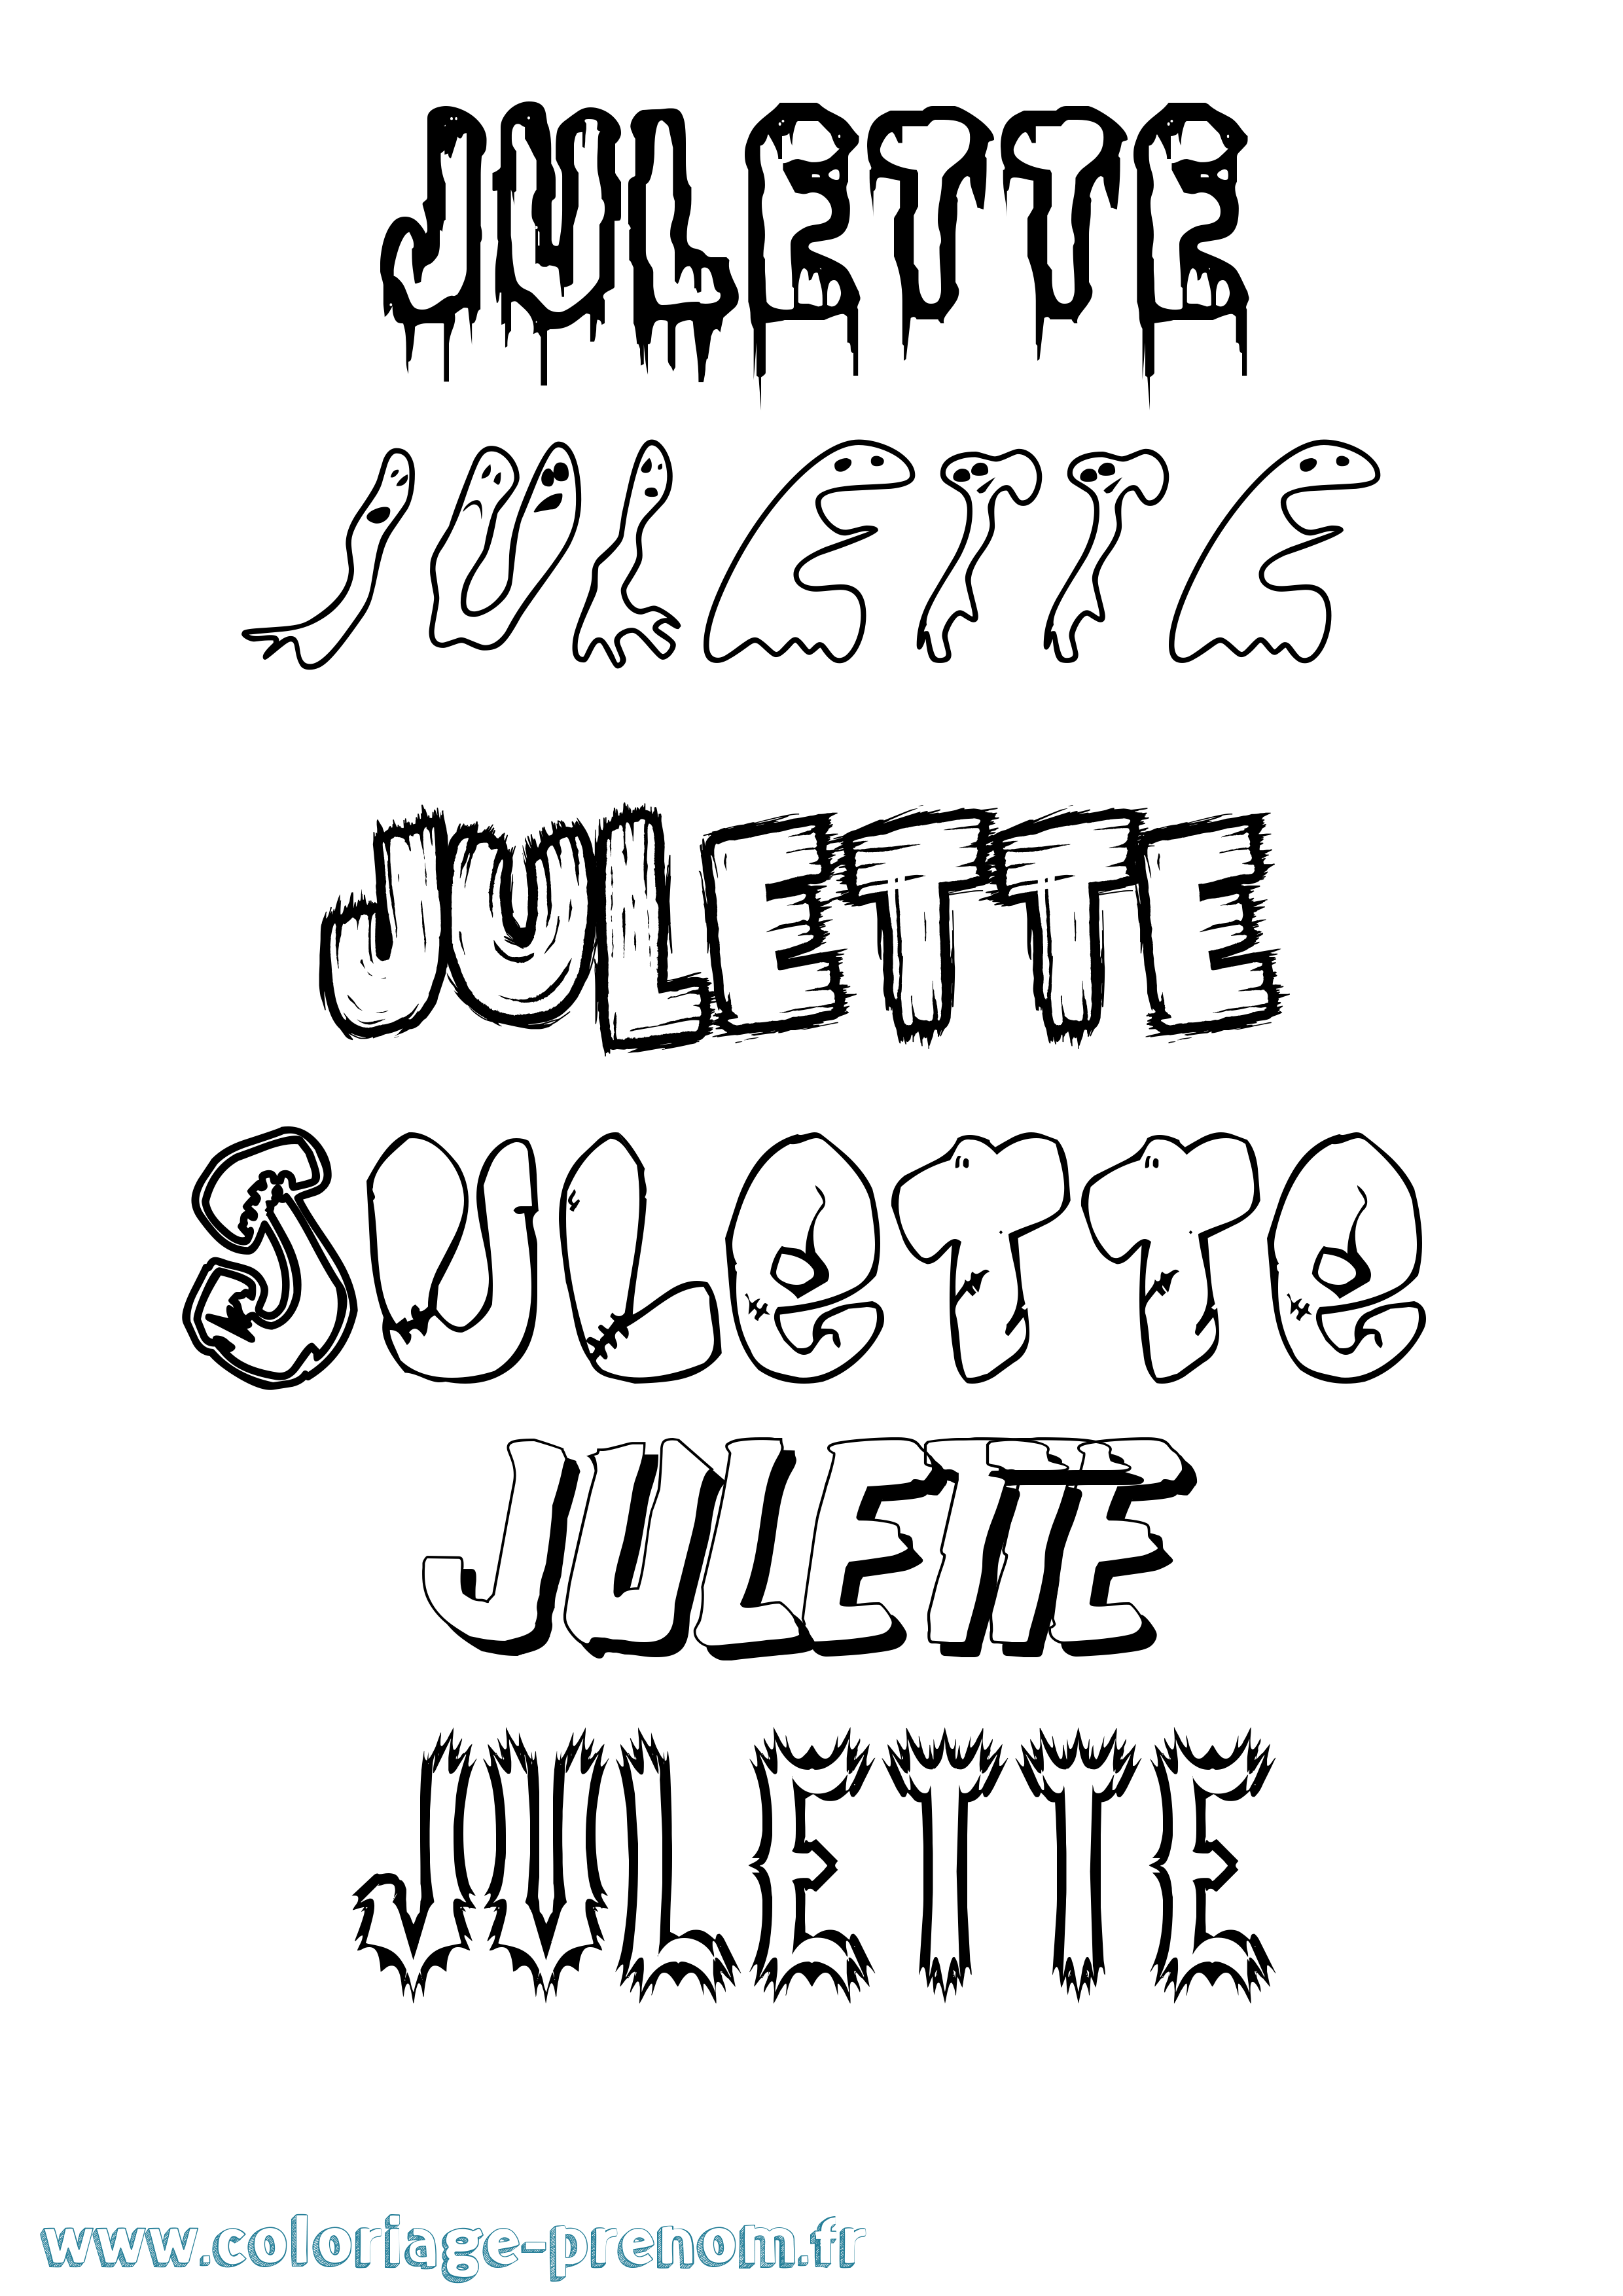 Coloriage prénom Julette Frisson